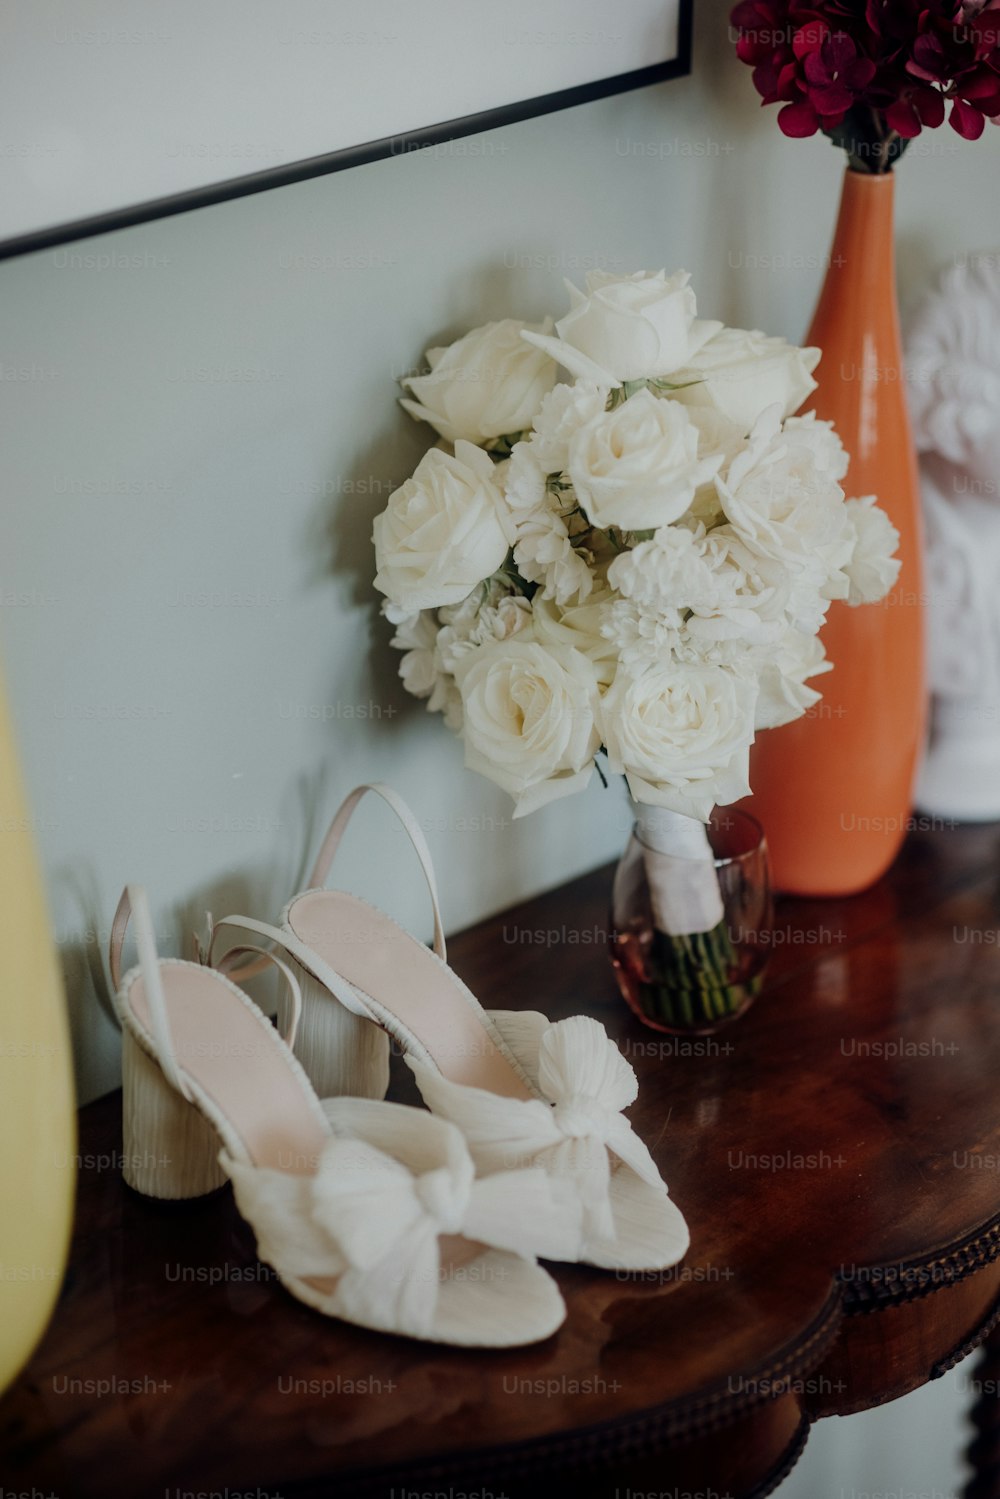 하얀 신발 한 켤레가 꽃병 옆 탁자 위에 놓여 있다